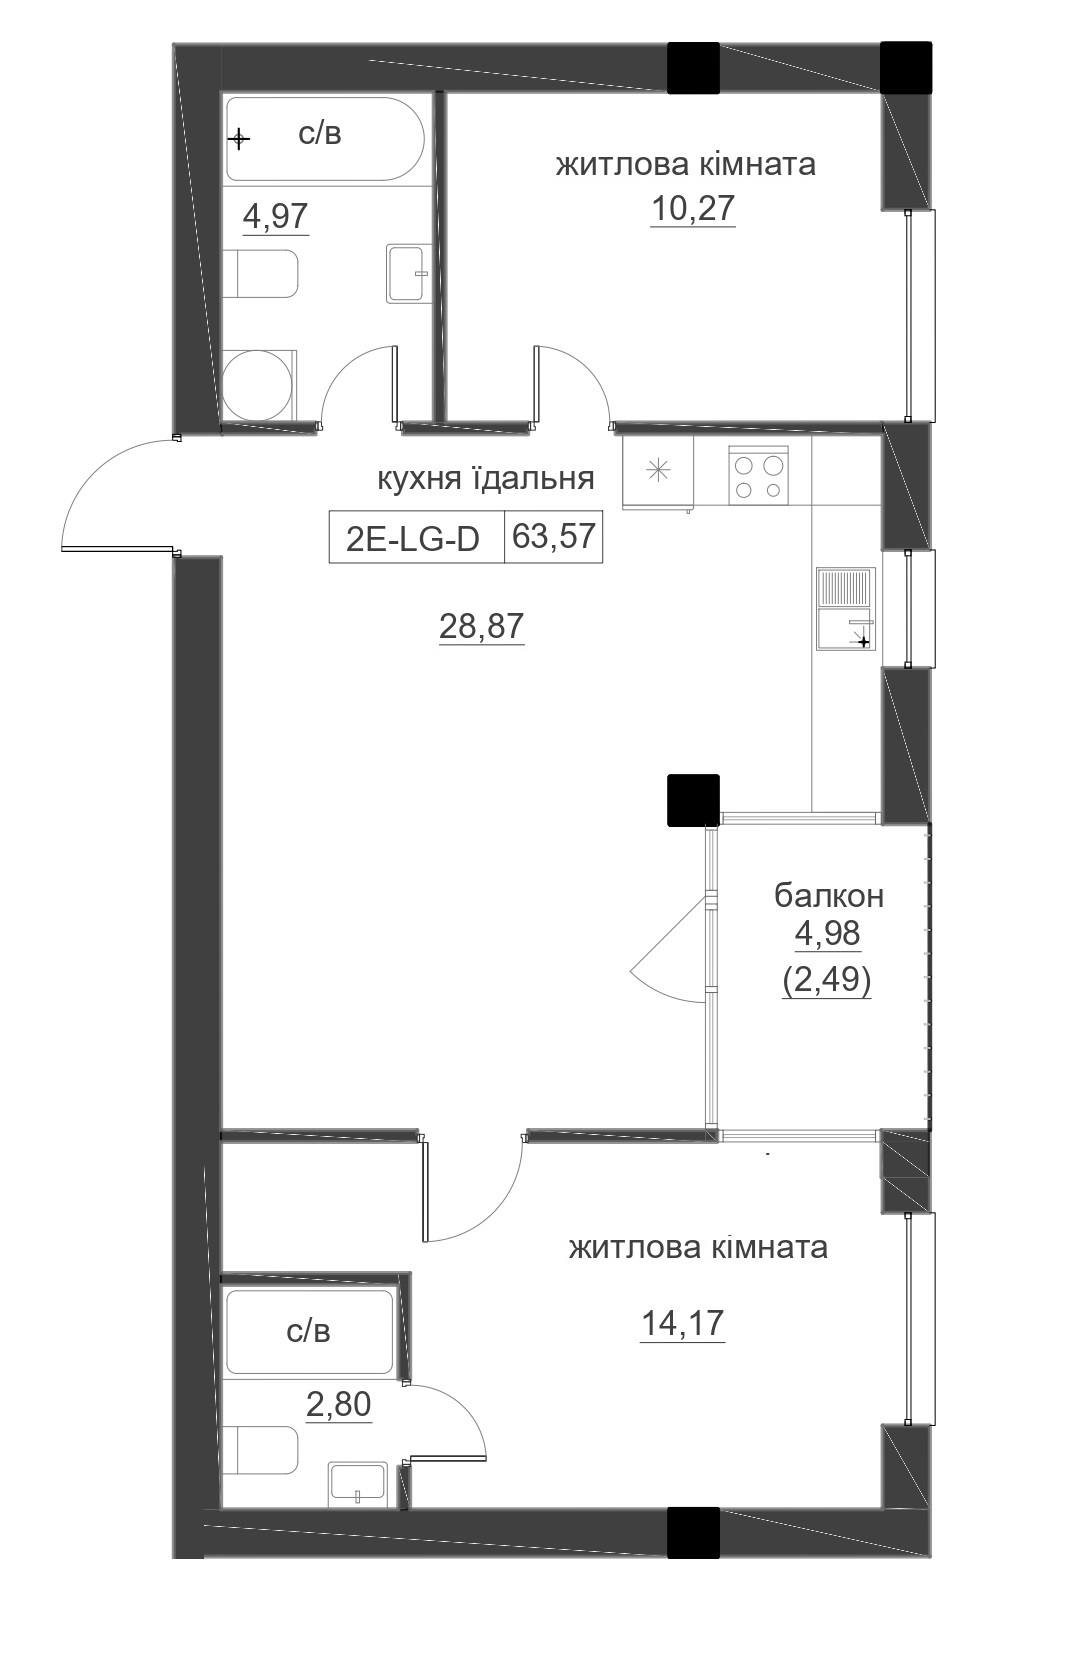 Планування 2-к квартира площею 63.57м2, LR-005-07/0006.